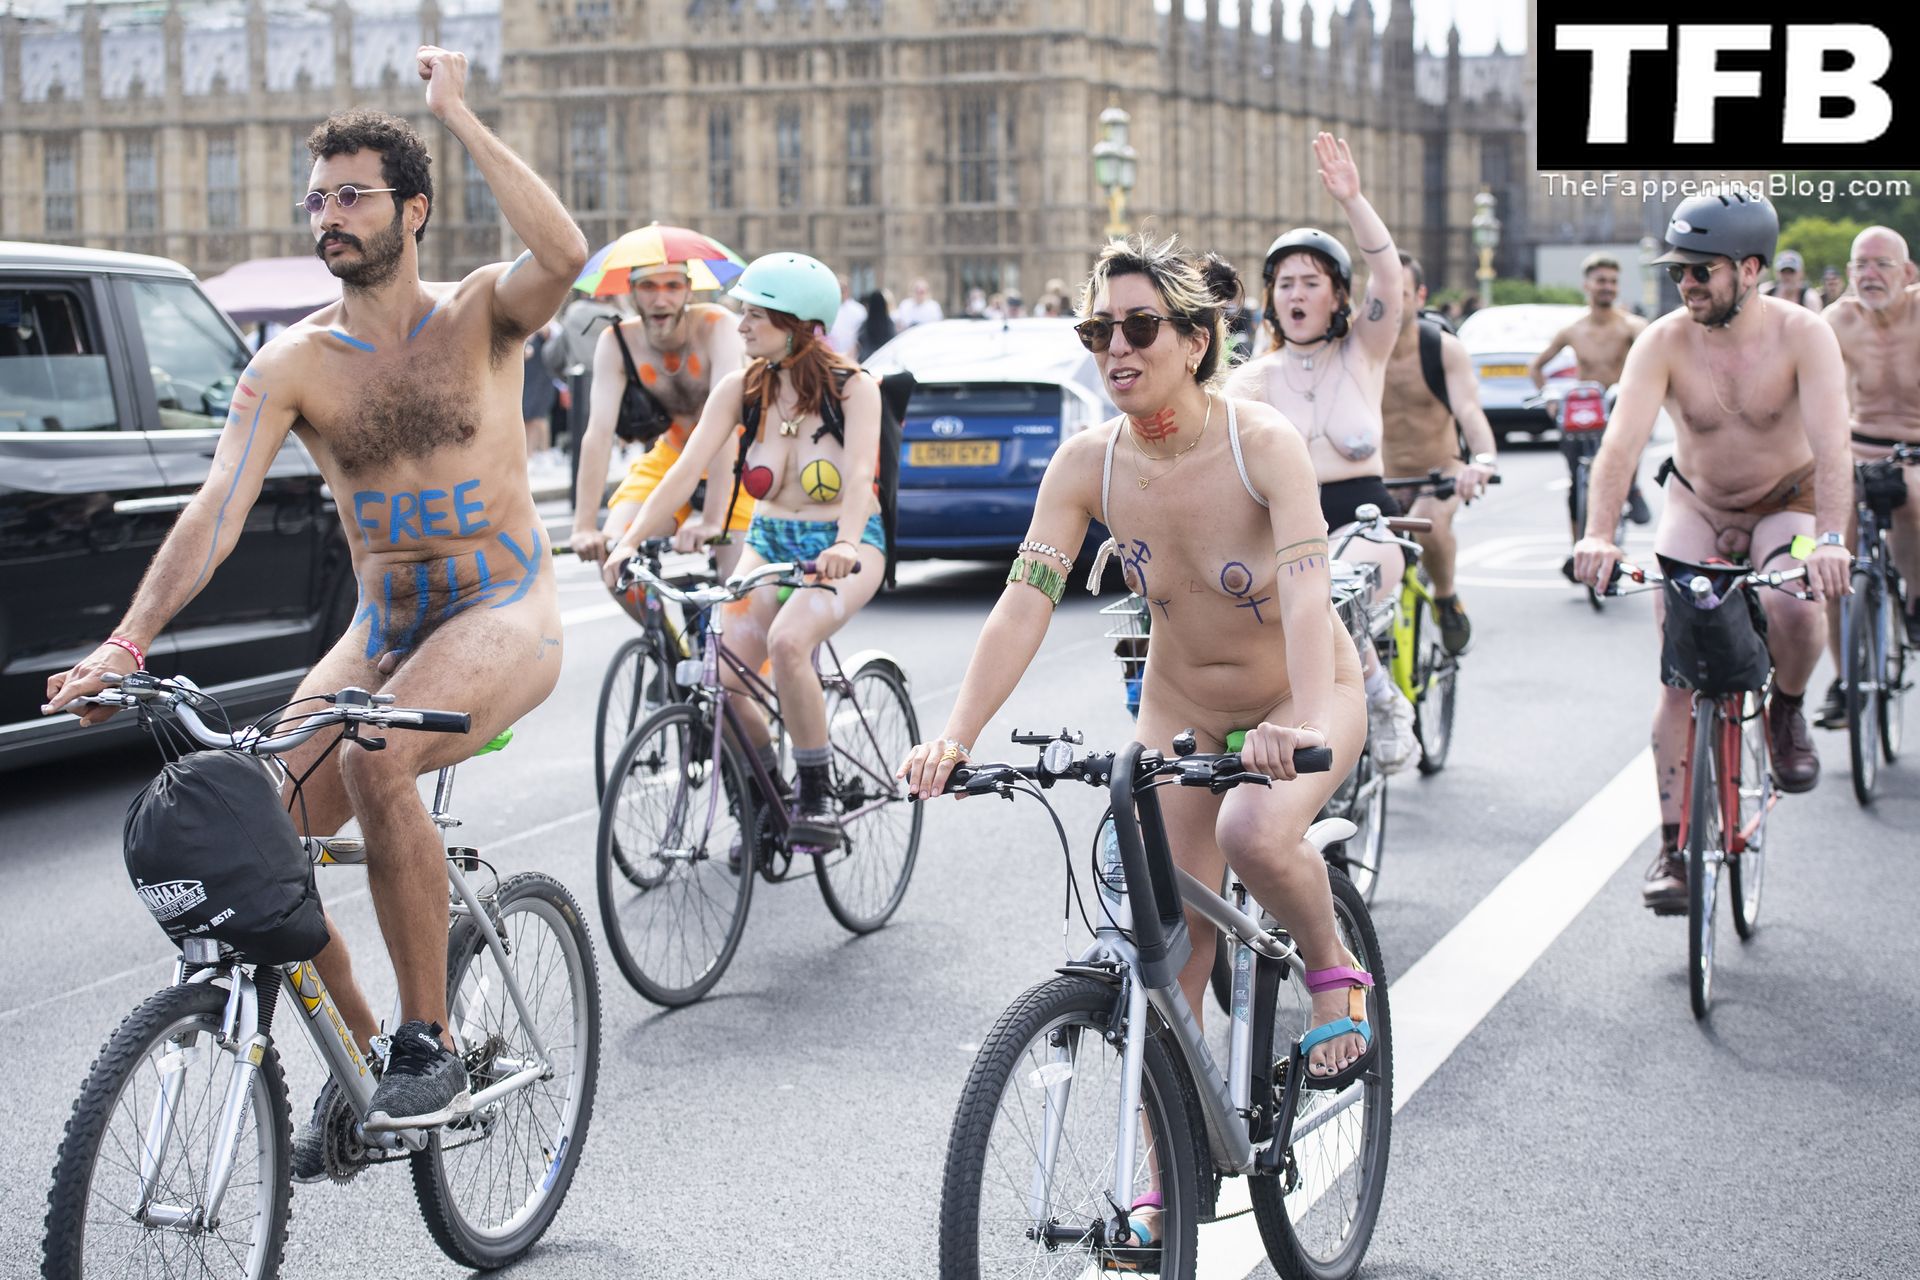 The-2022-World-Naked-Bike-Ride-The-Fappening-Blog-16.jpg